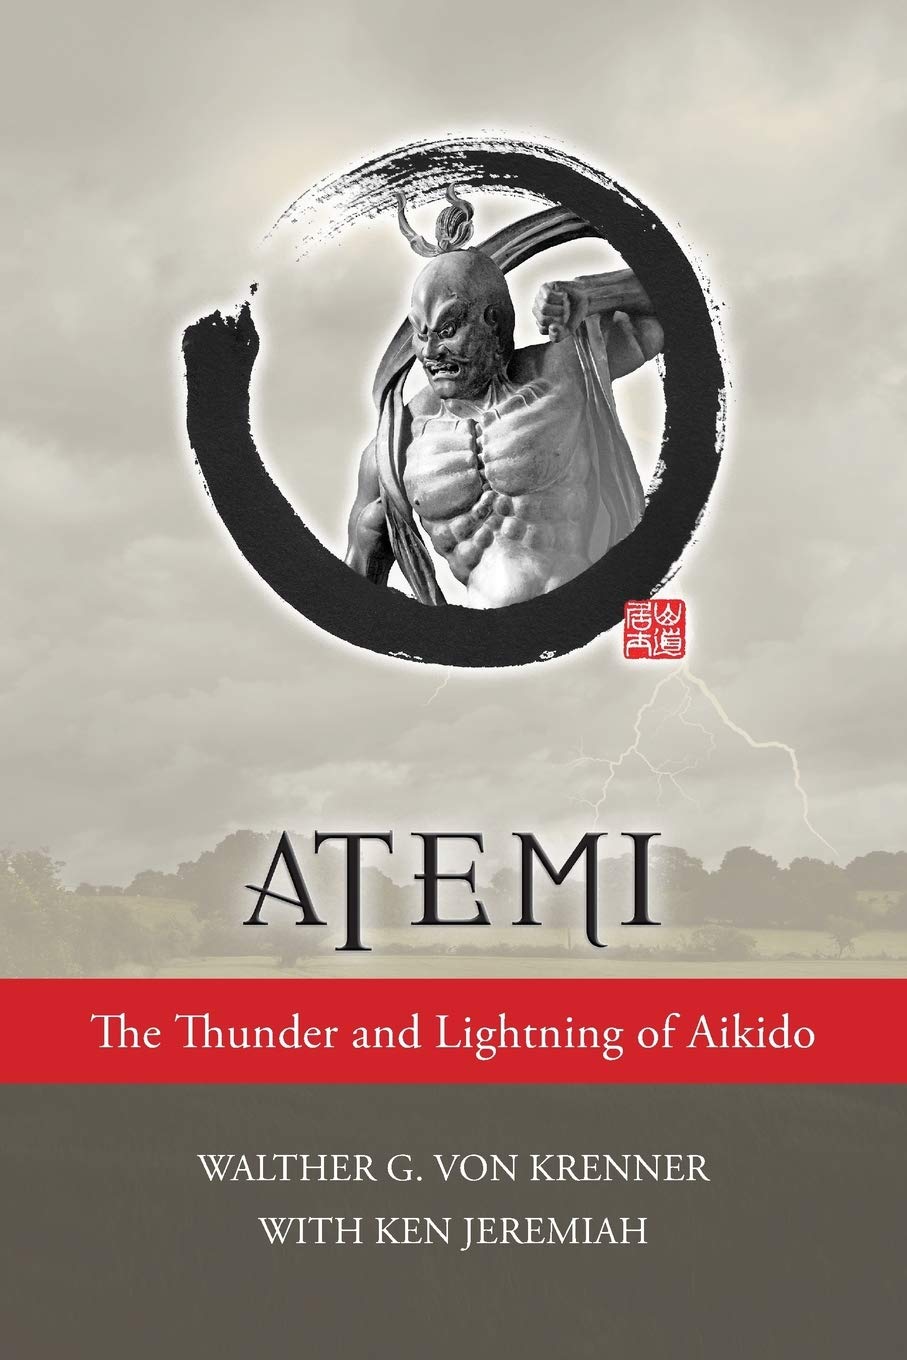 Atemi: El trueno y el relámpago del libro Aikido de Walther Von Krenner